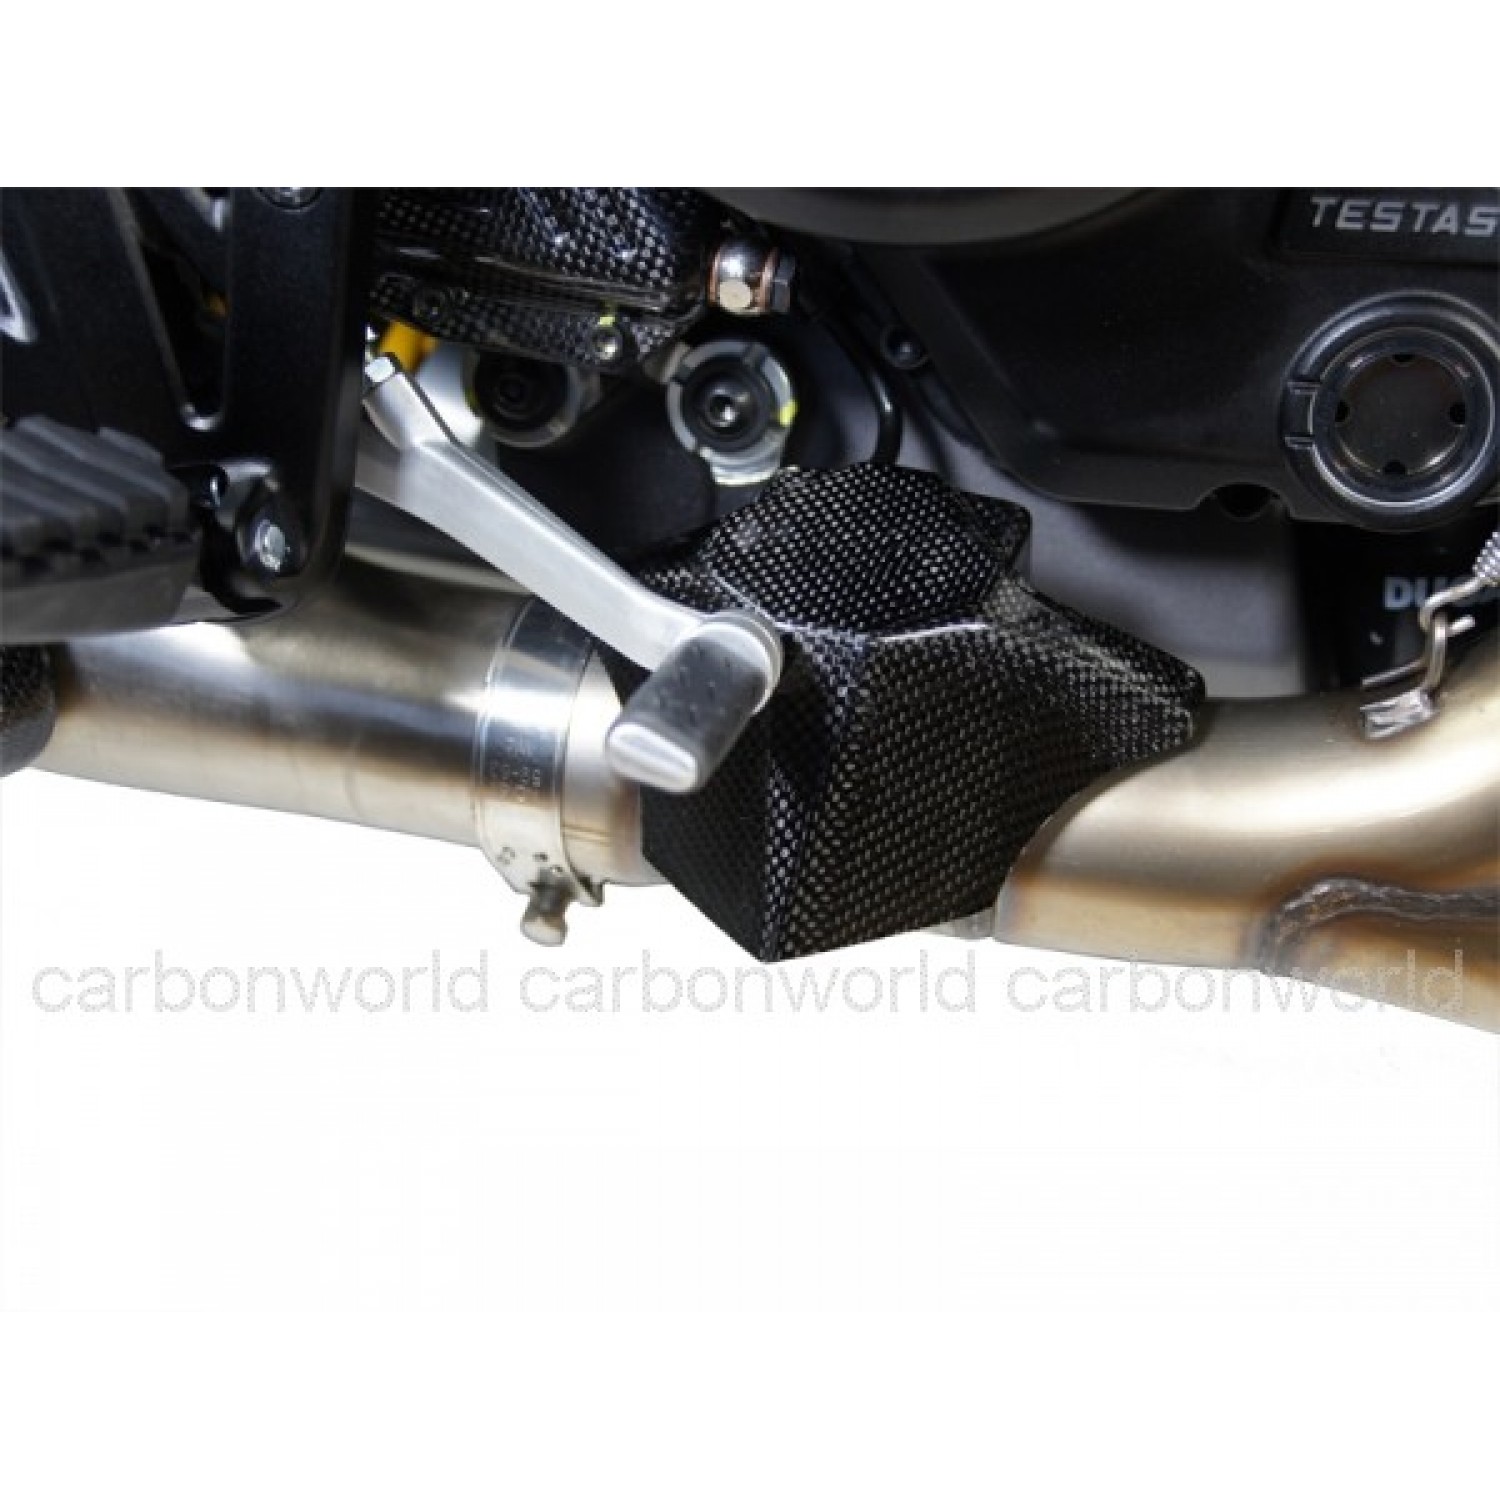 Support de bouchon d'essence et valve de sécurité de BMW f 650 / f